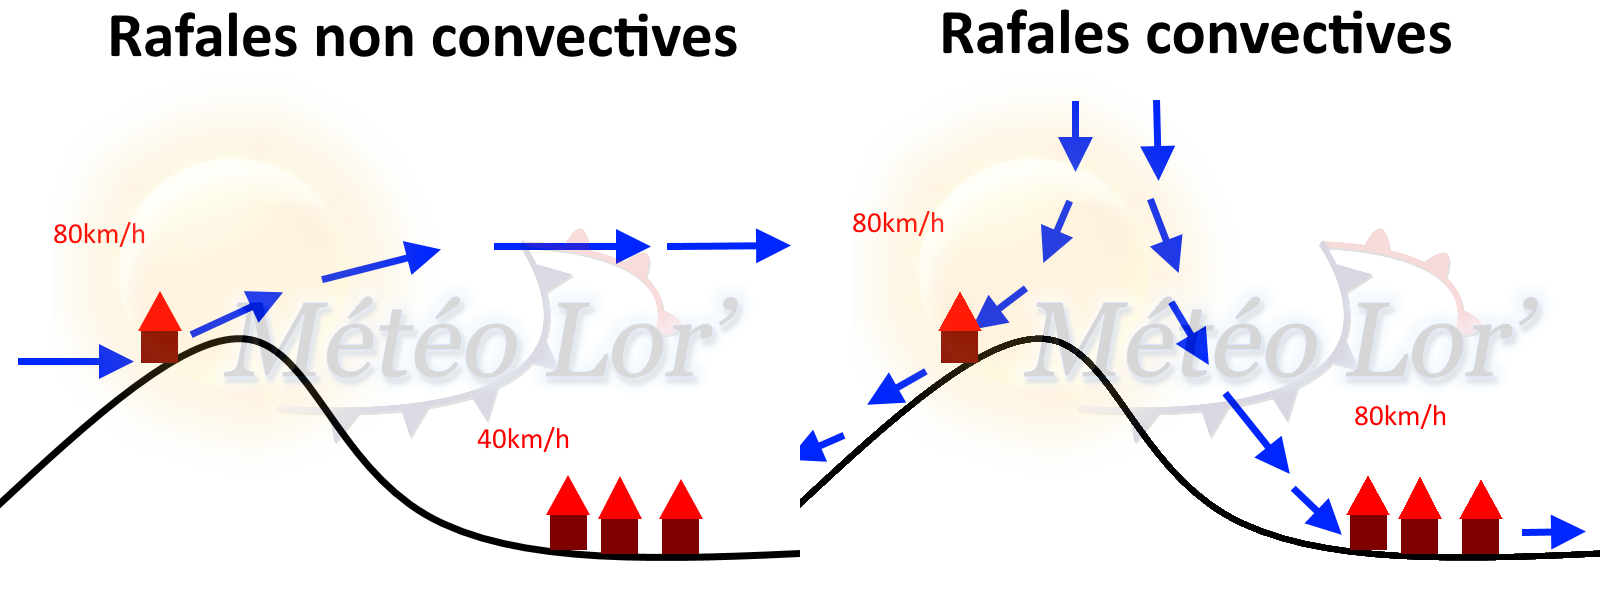 rafales_covectives_non_convectives